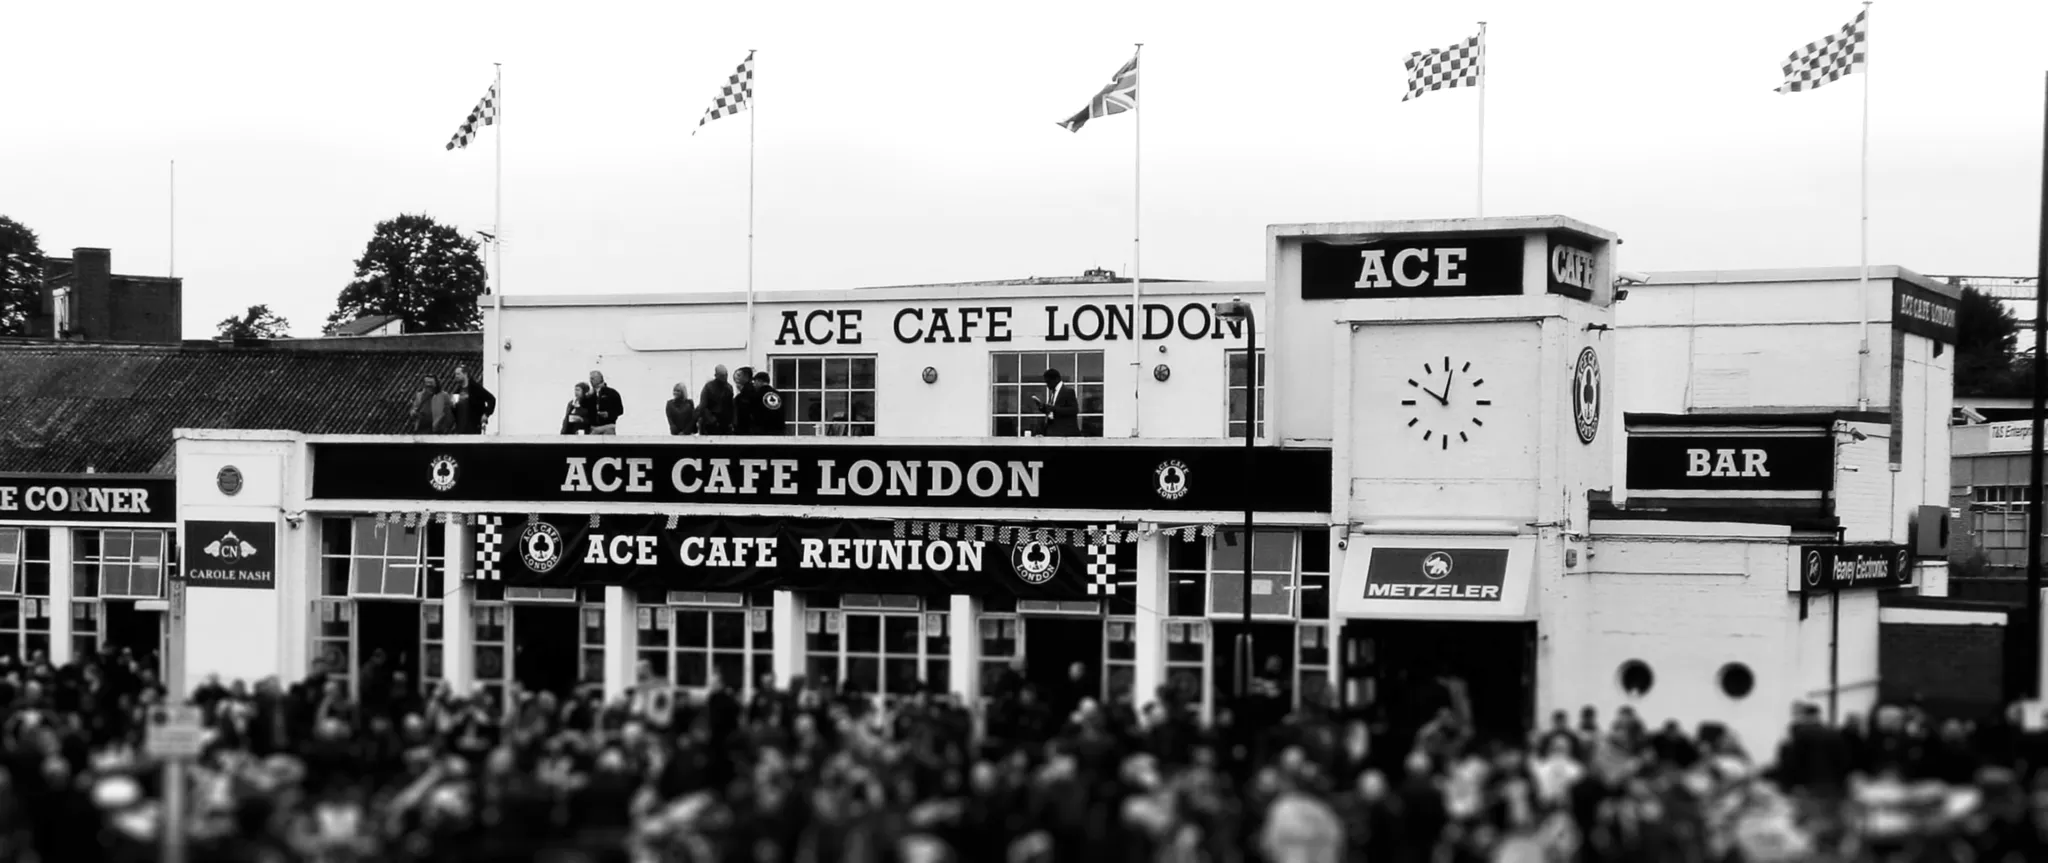 ACE Cafe ตำนานคาเฟ่เแห่งยุค 60 ที่ควรไปซักครั้งในชีวิต - SuperBikeMag ...